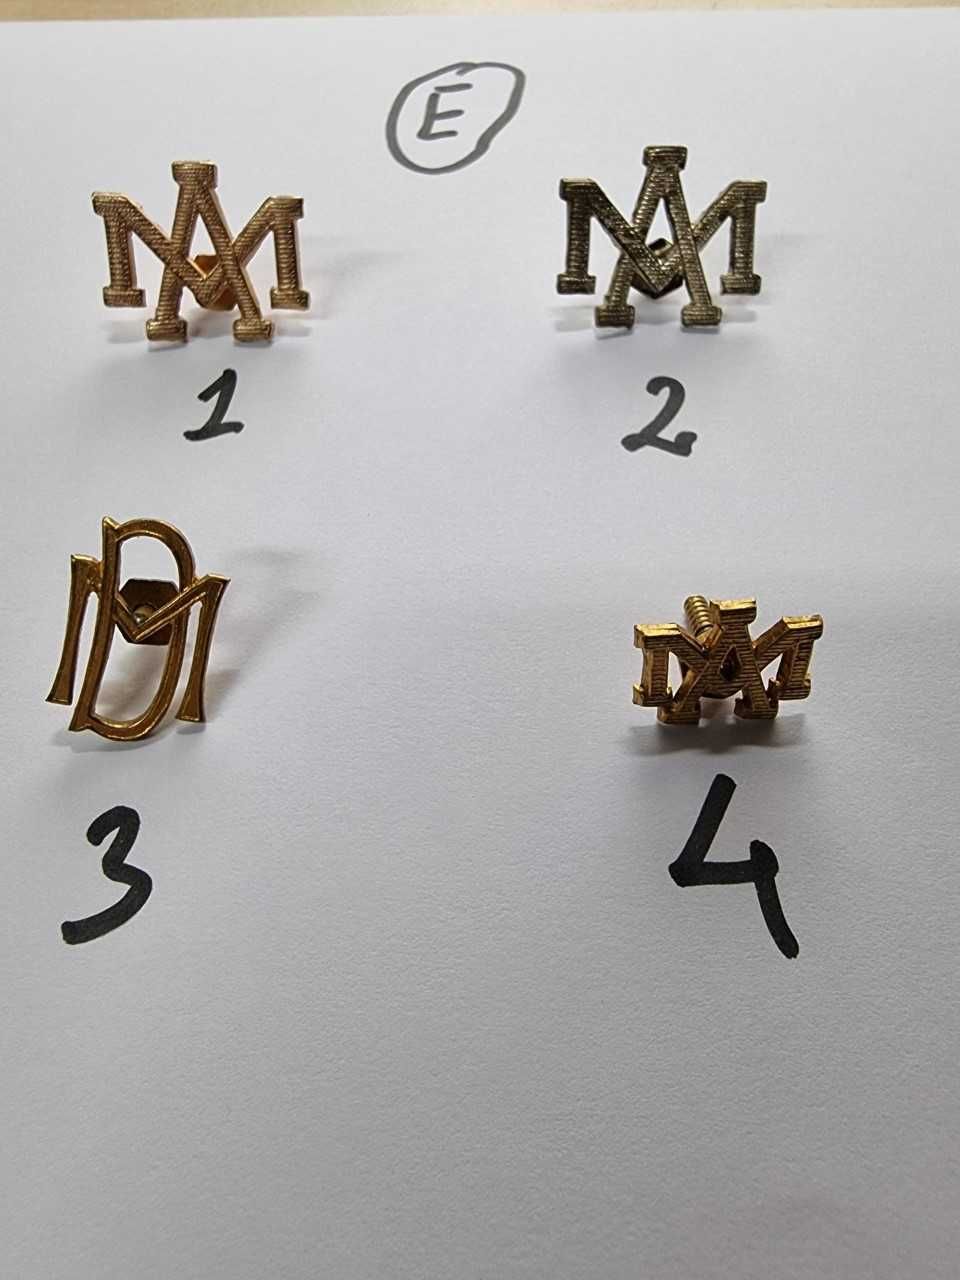 Simbologia Militar - Pins Militares